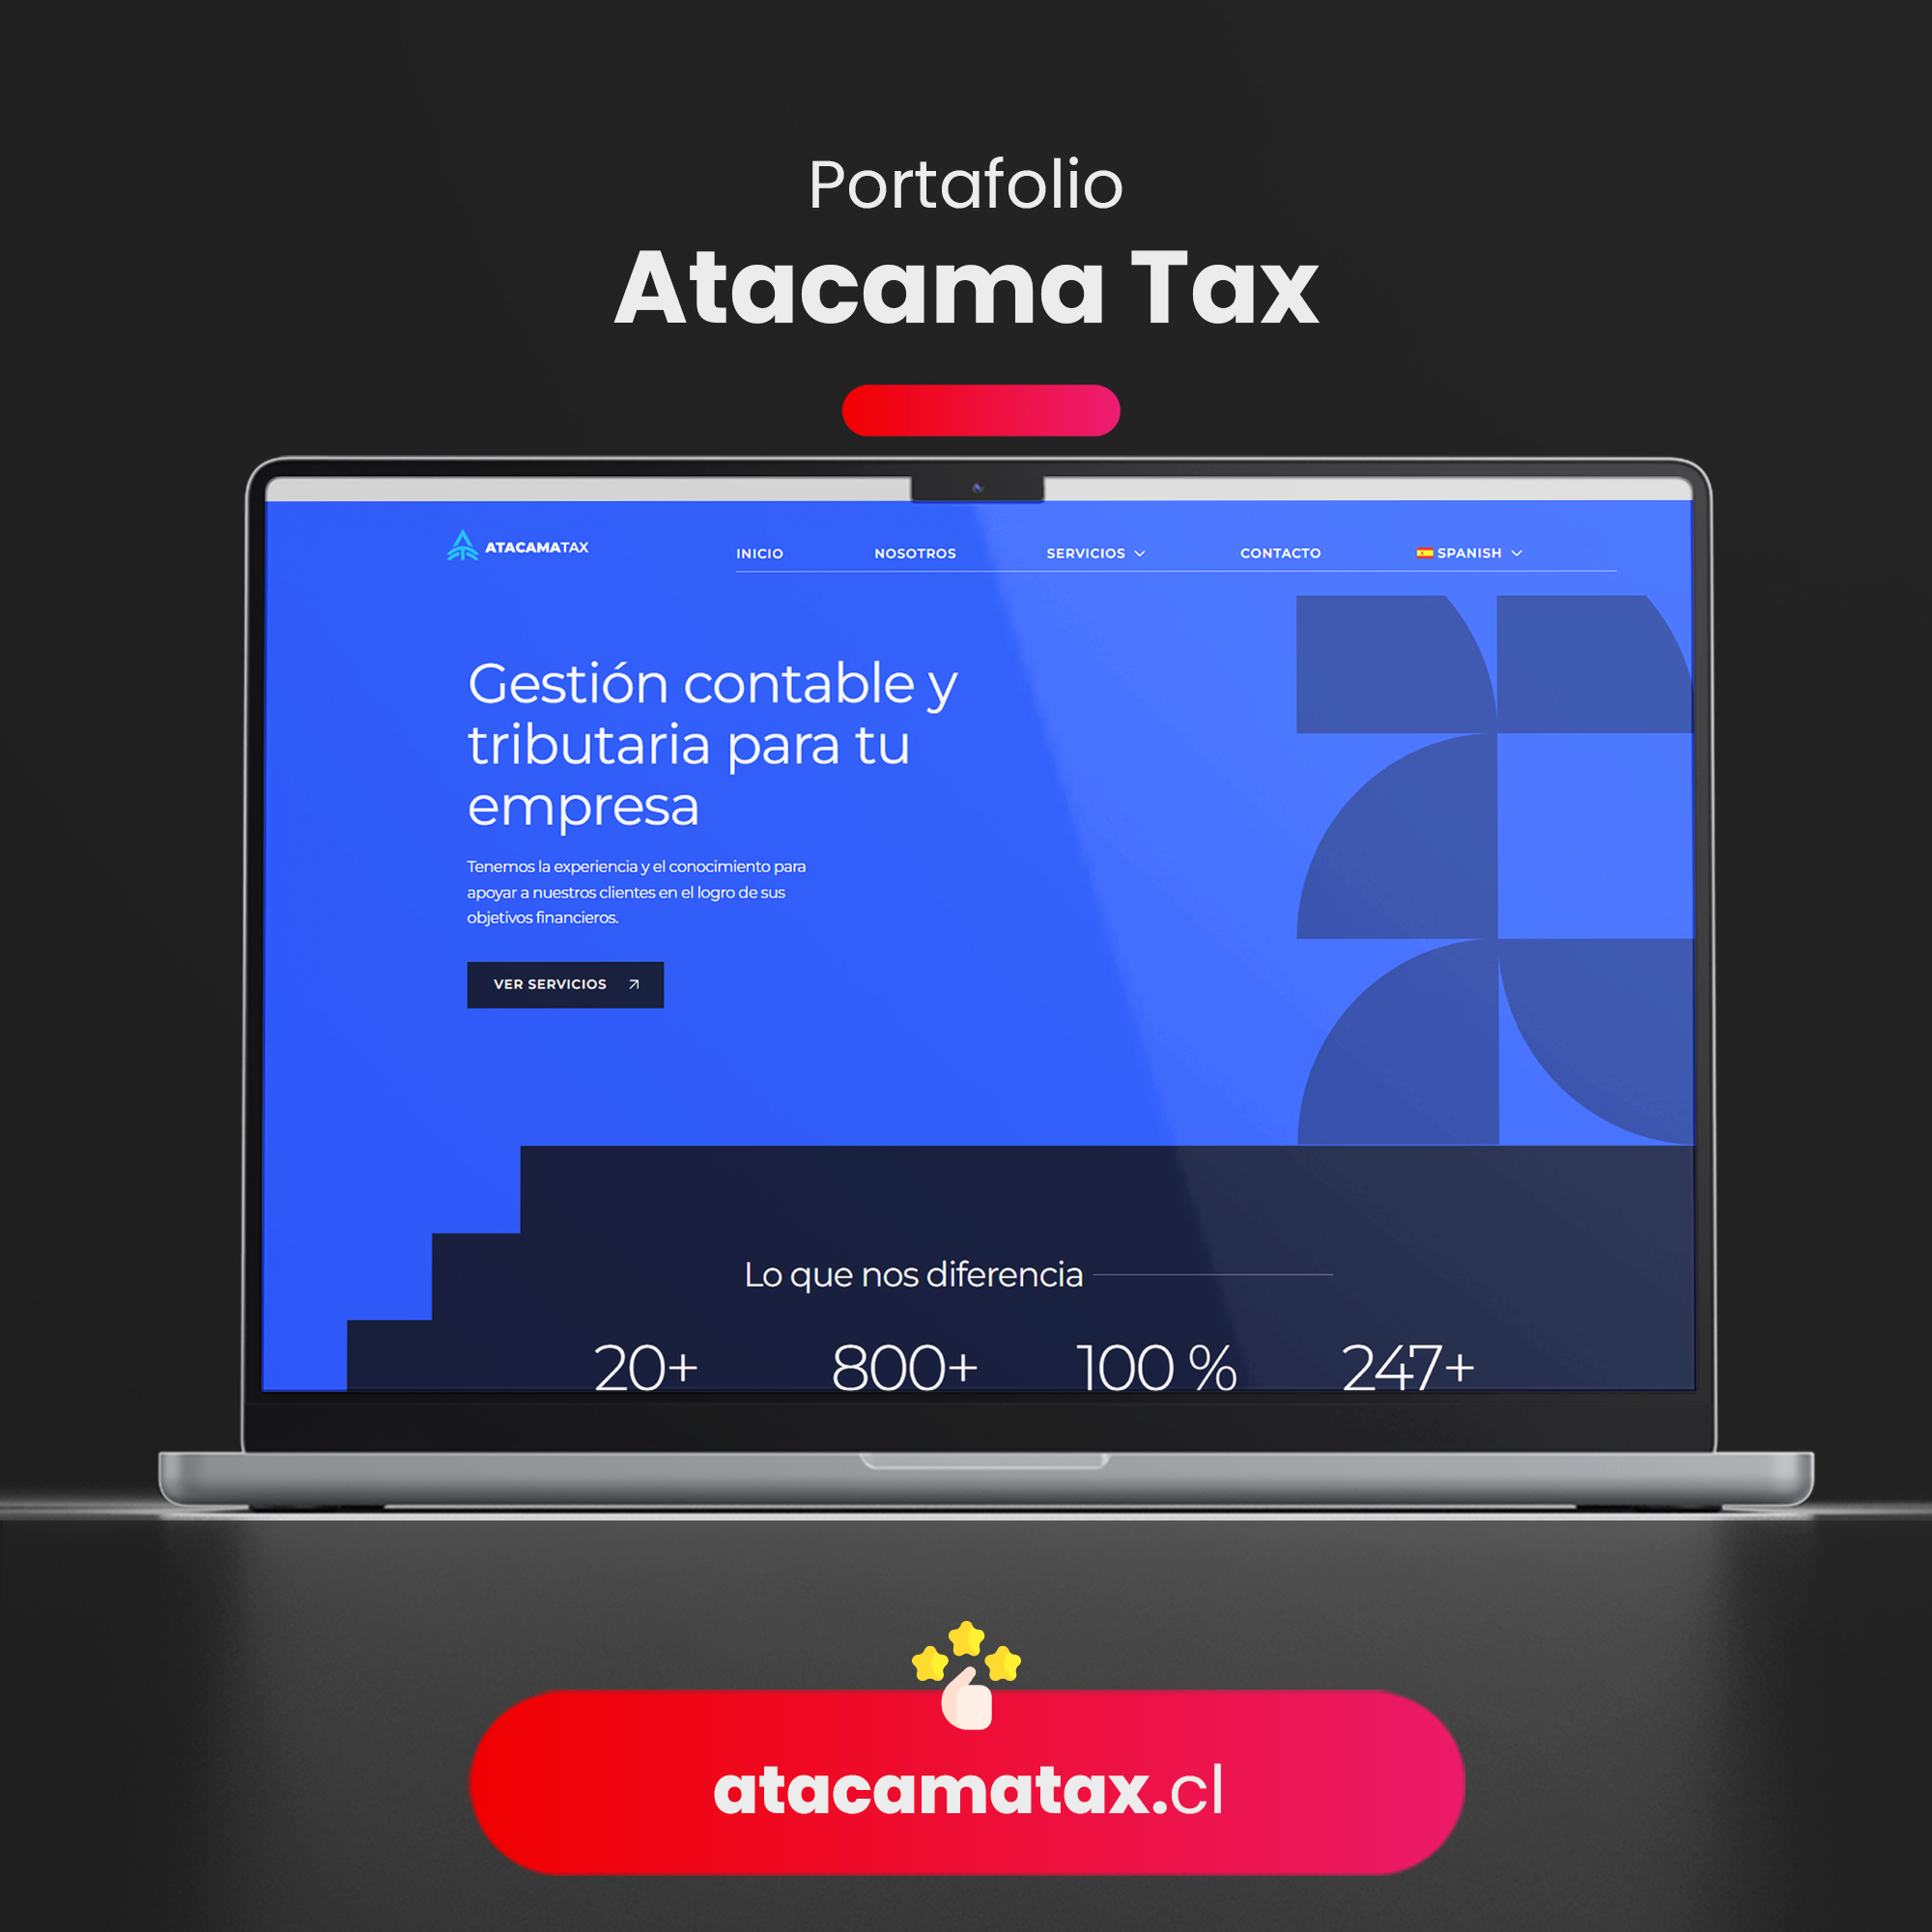 Atacama Tax